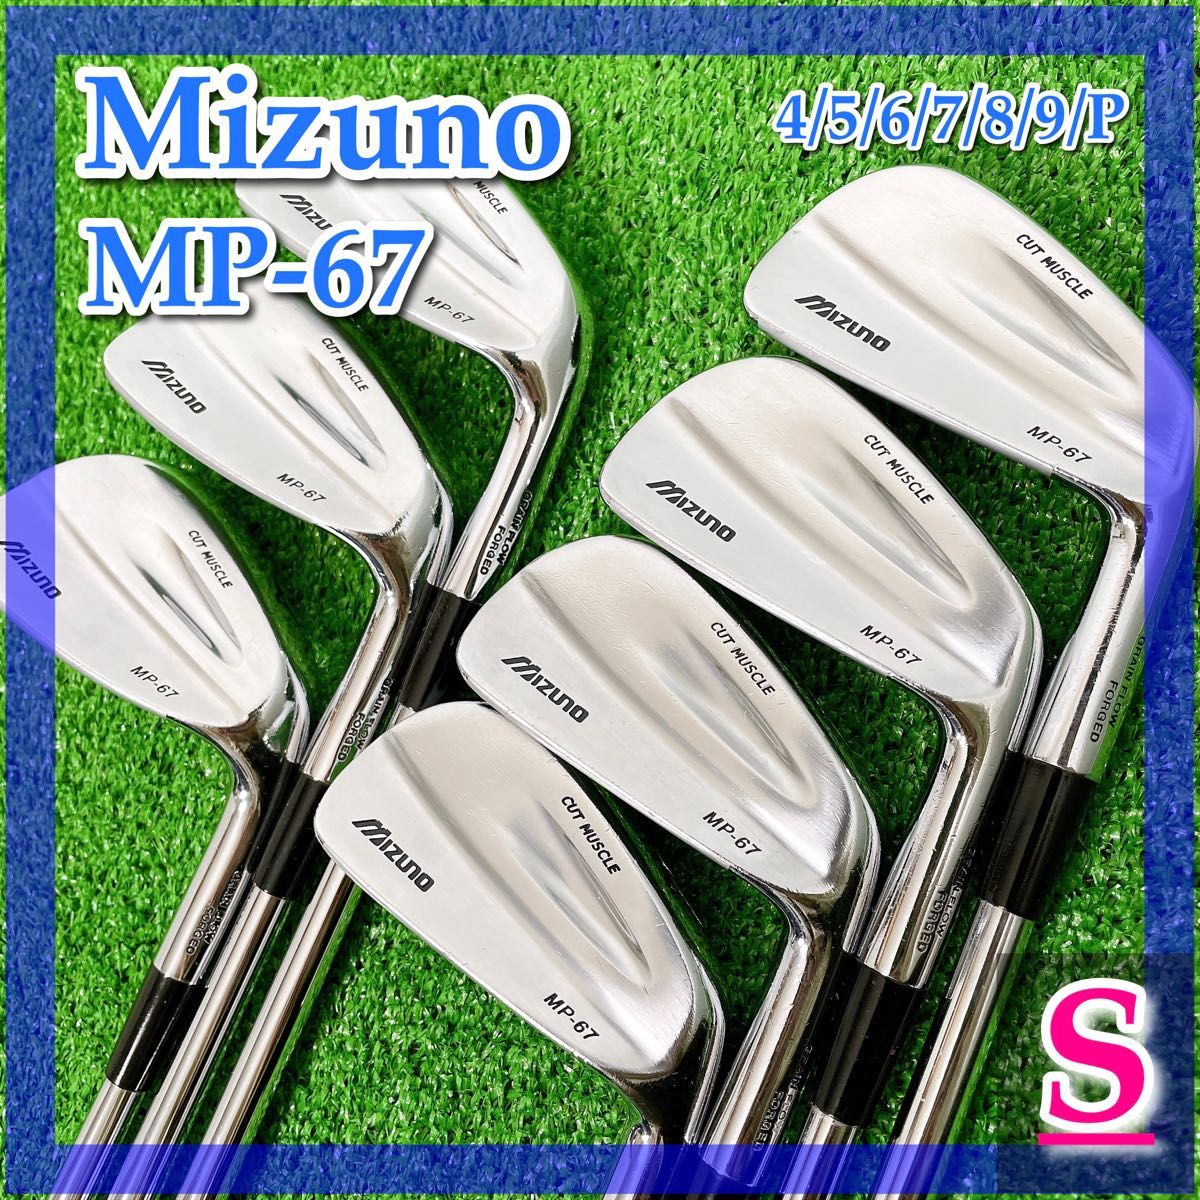 高質で安価 ミズノ MIZUNO MP20 アイアンセット 6本 MPシリーズ aob.adv.br